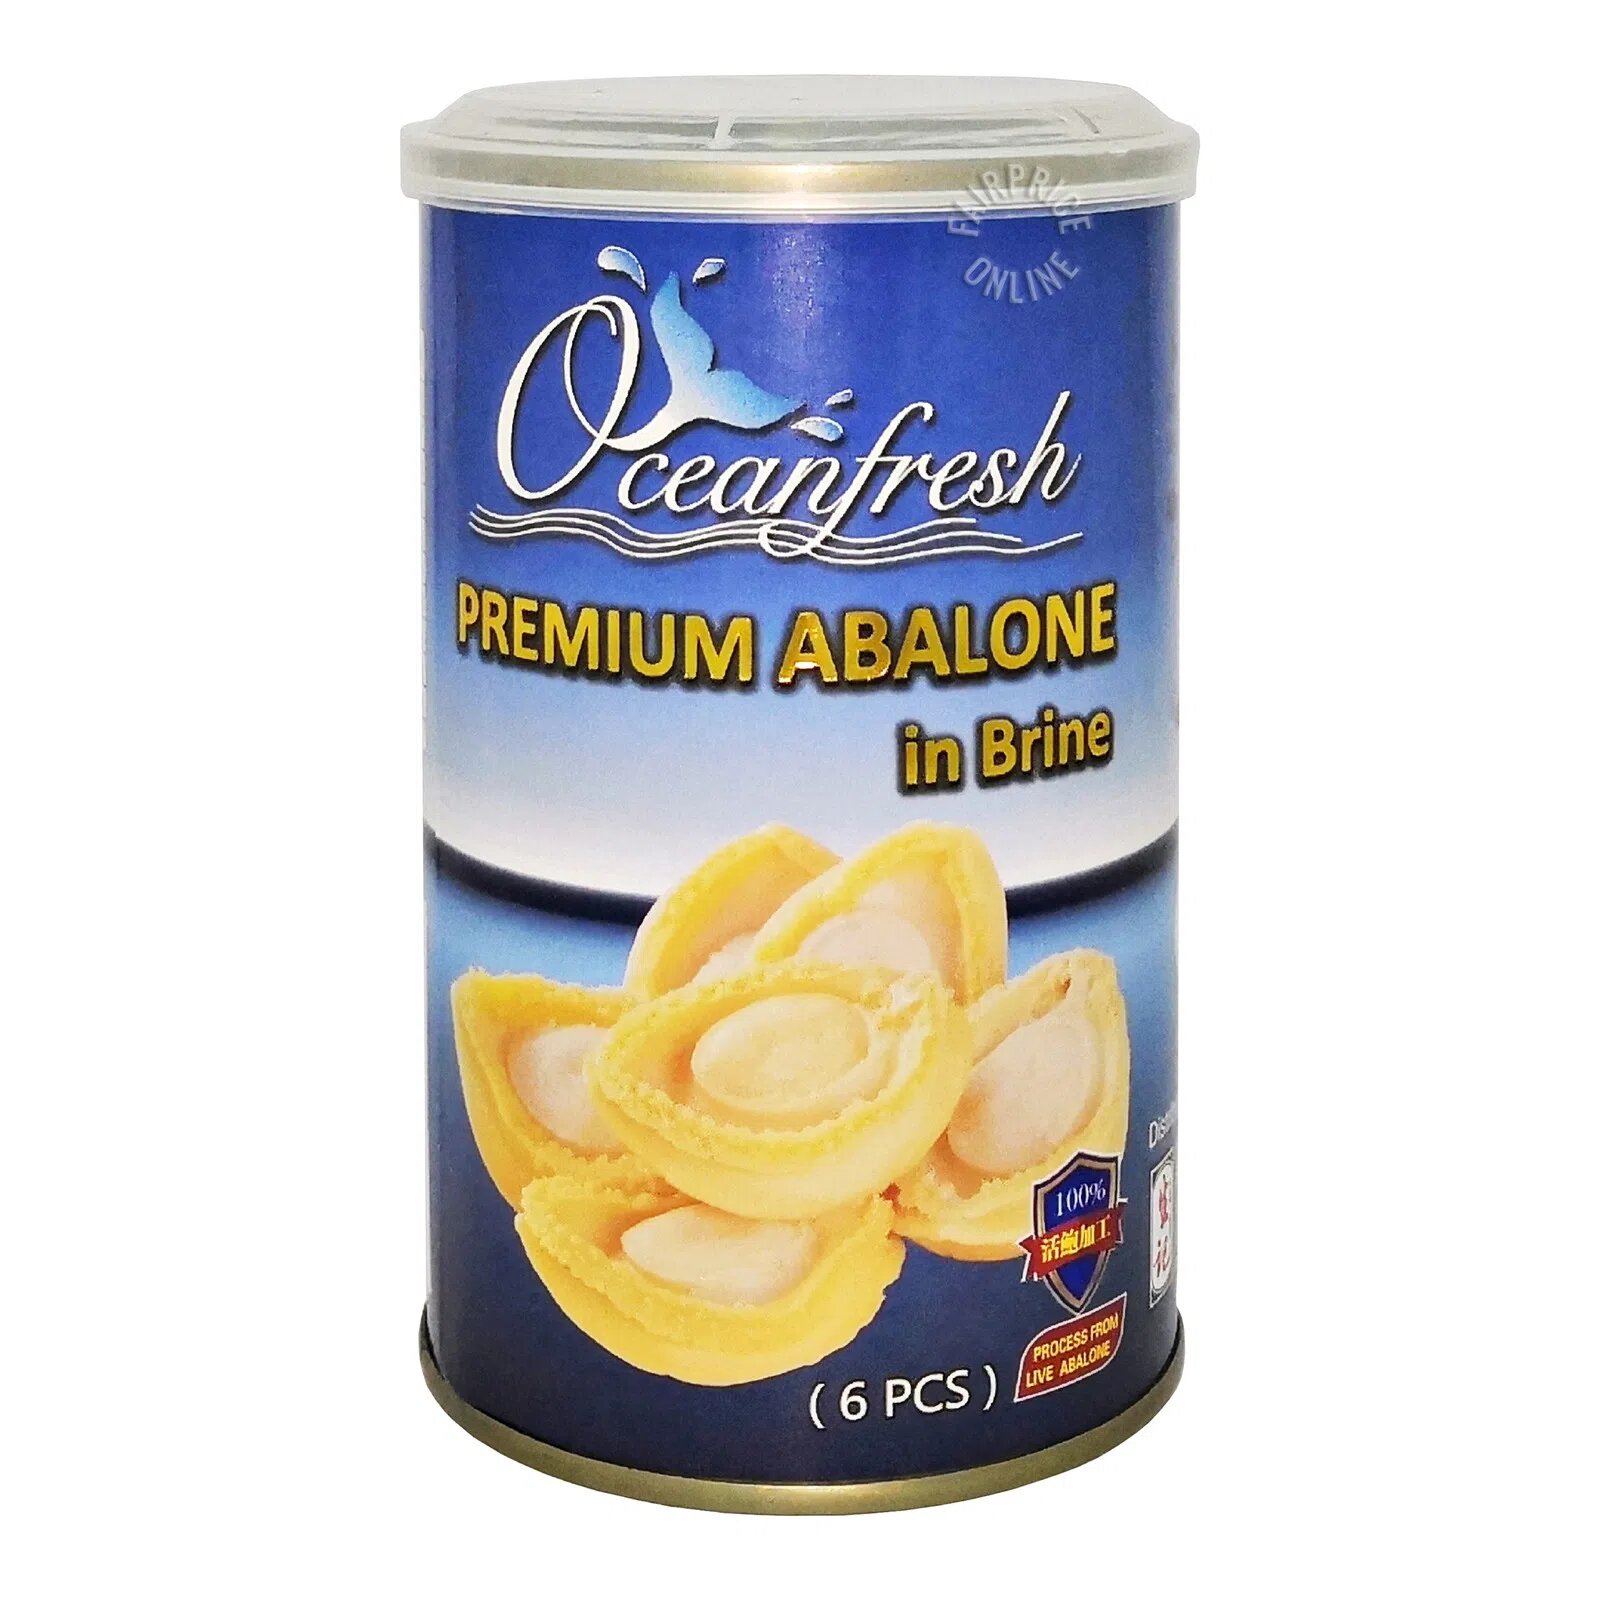 Oceanfresh Premium Abalone in Brine